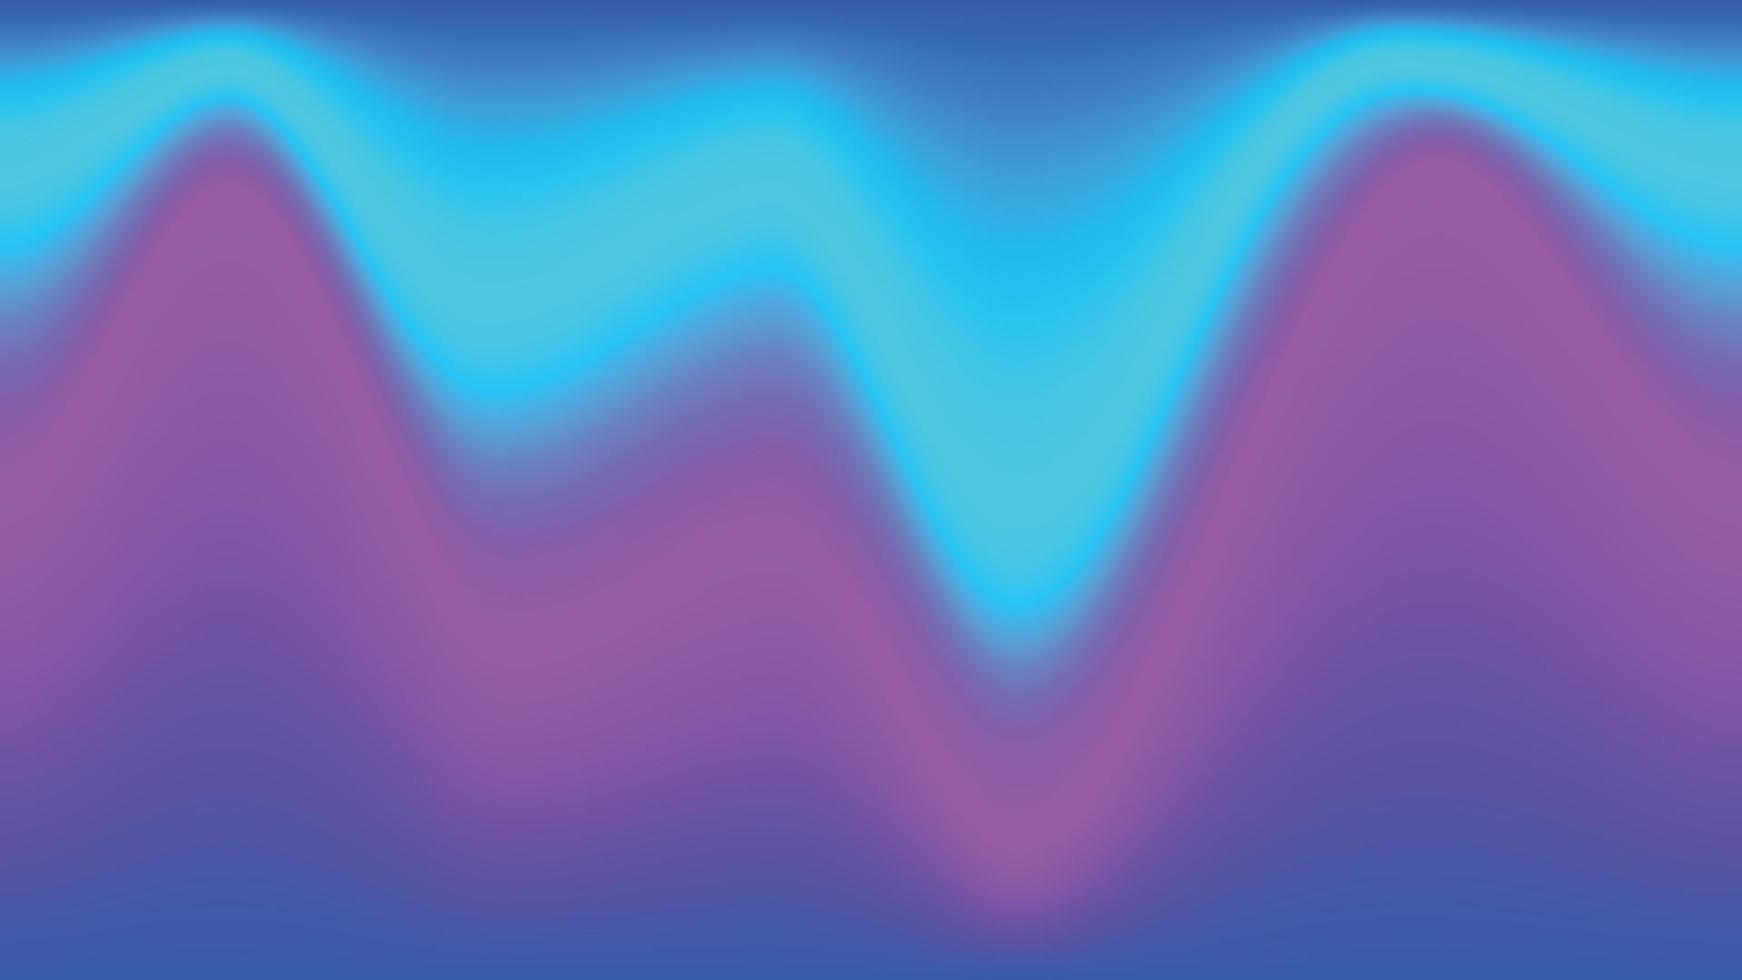 lámina líquida suave y borrosa moda colorido azul cian, vector degradado violeta. diseño de desenfoque de plantilla de portada moderna. fondo para volante, publicación en redes sociales, pantalla, aplicación móvil, fondo de pantalla